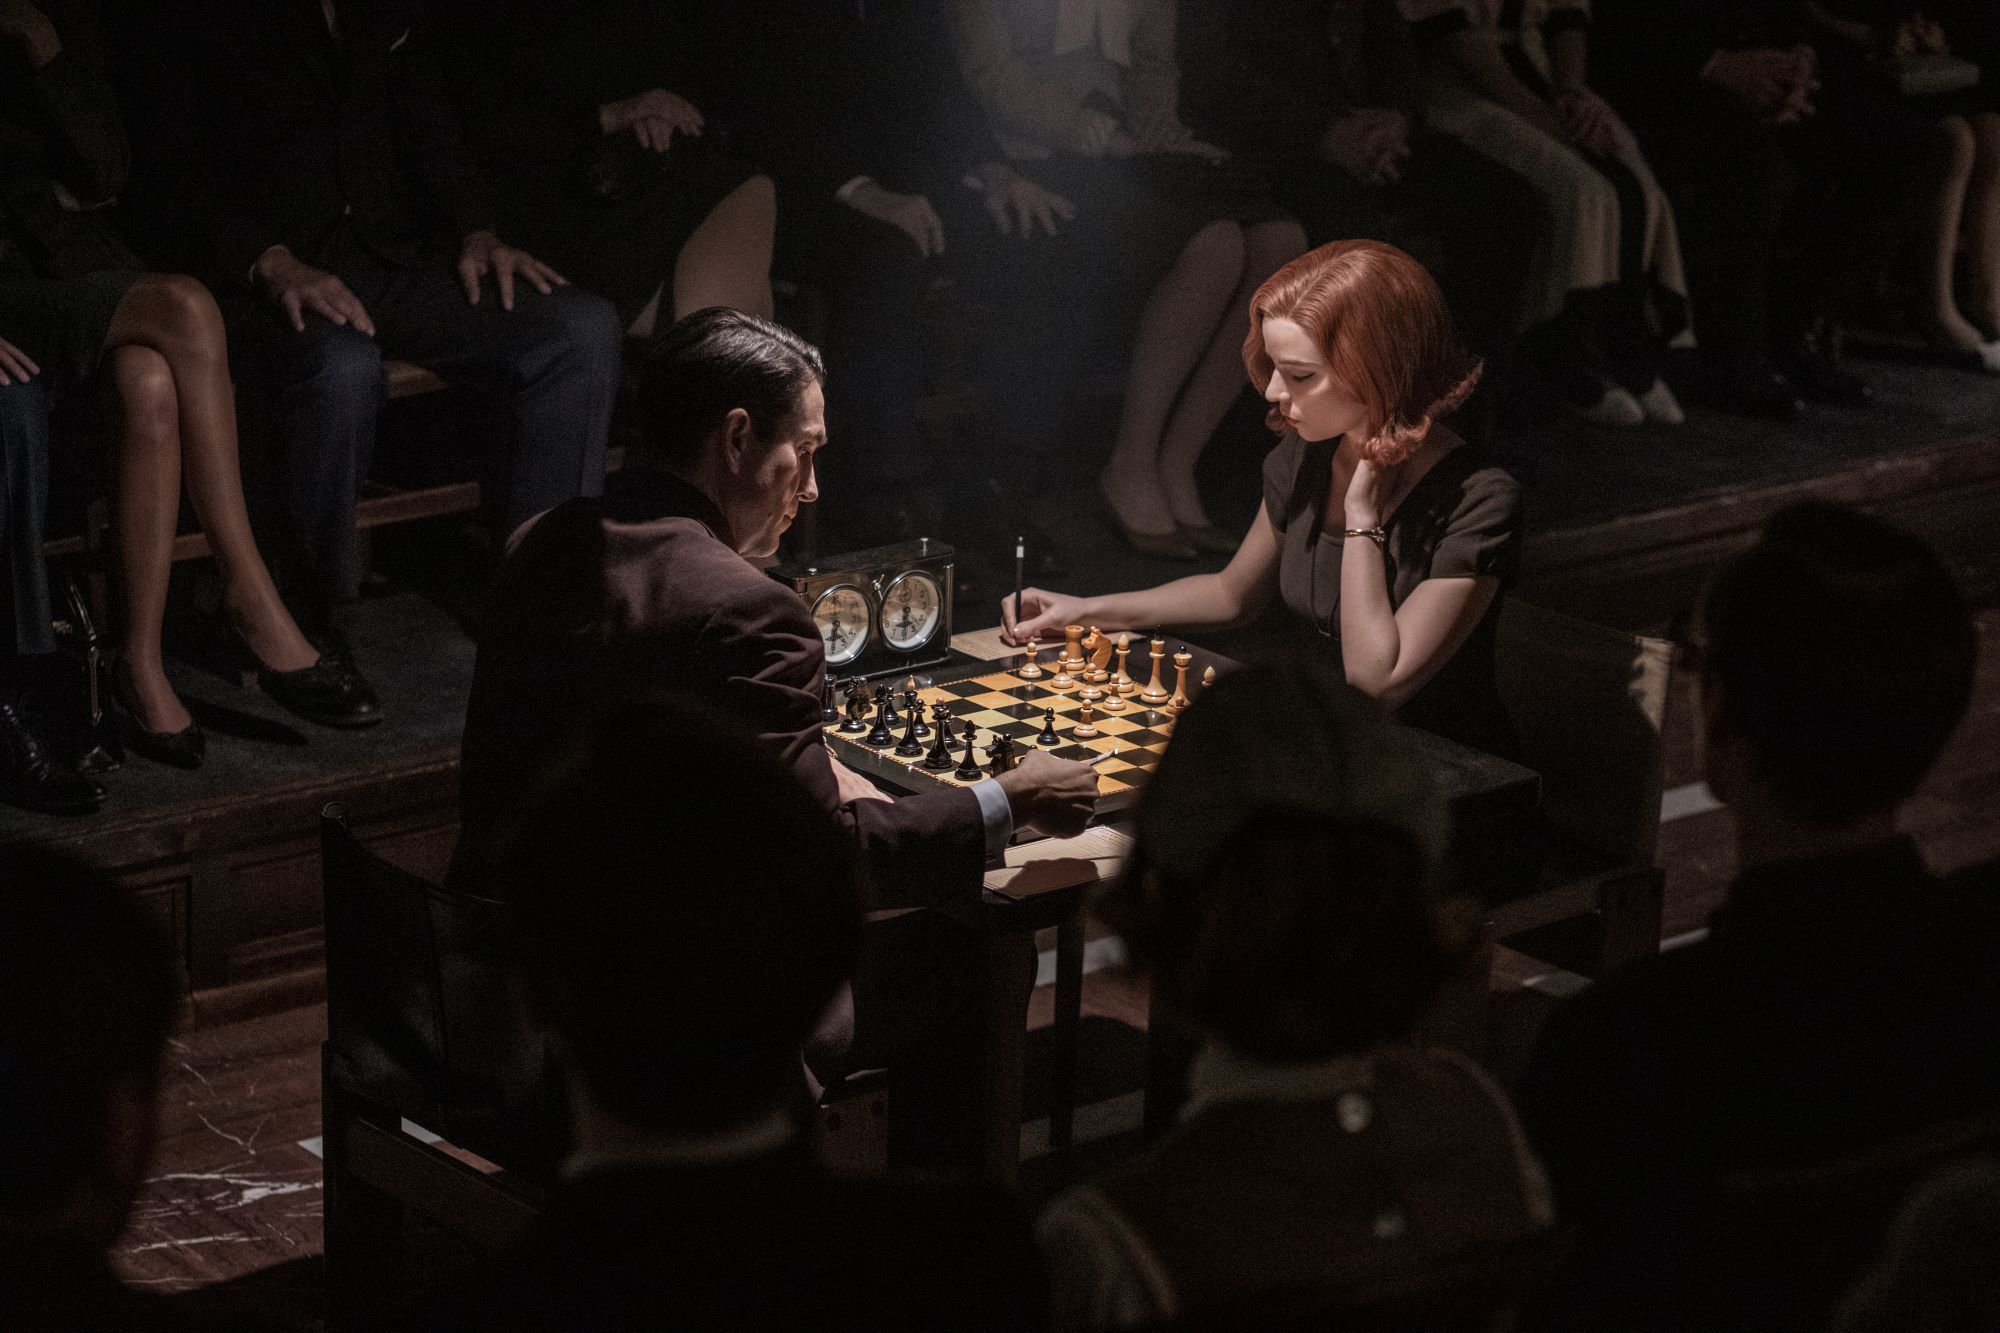 anya taylor joy da vida a la jugadora de ajedrez beth harmon en la serie gambito de dama en la imagen el personaje está jugando una partida